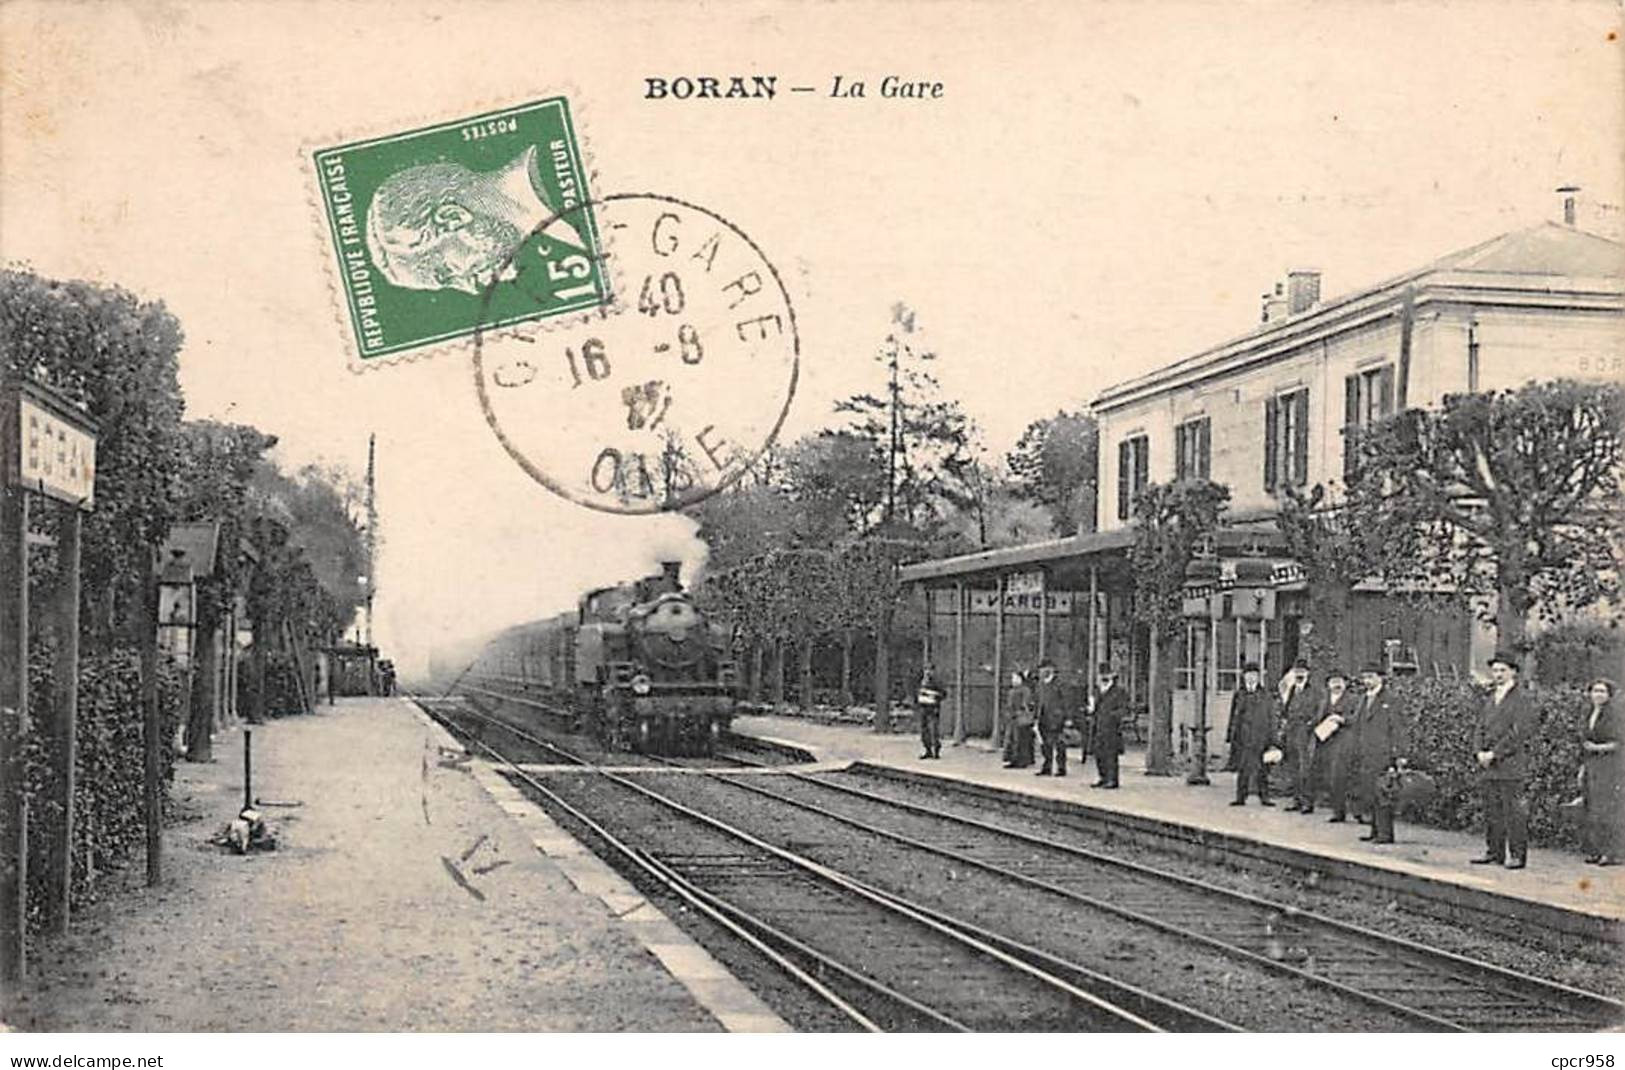 60 - BORAN - SAN57161 - La Gare - Train - Boran-sur-Oise